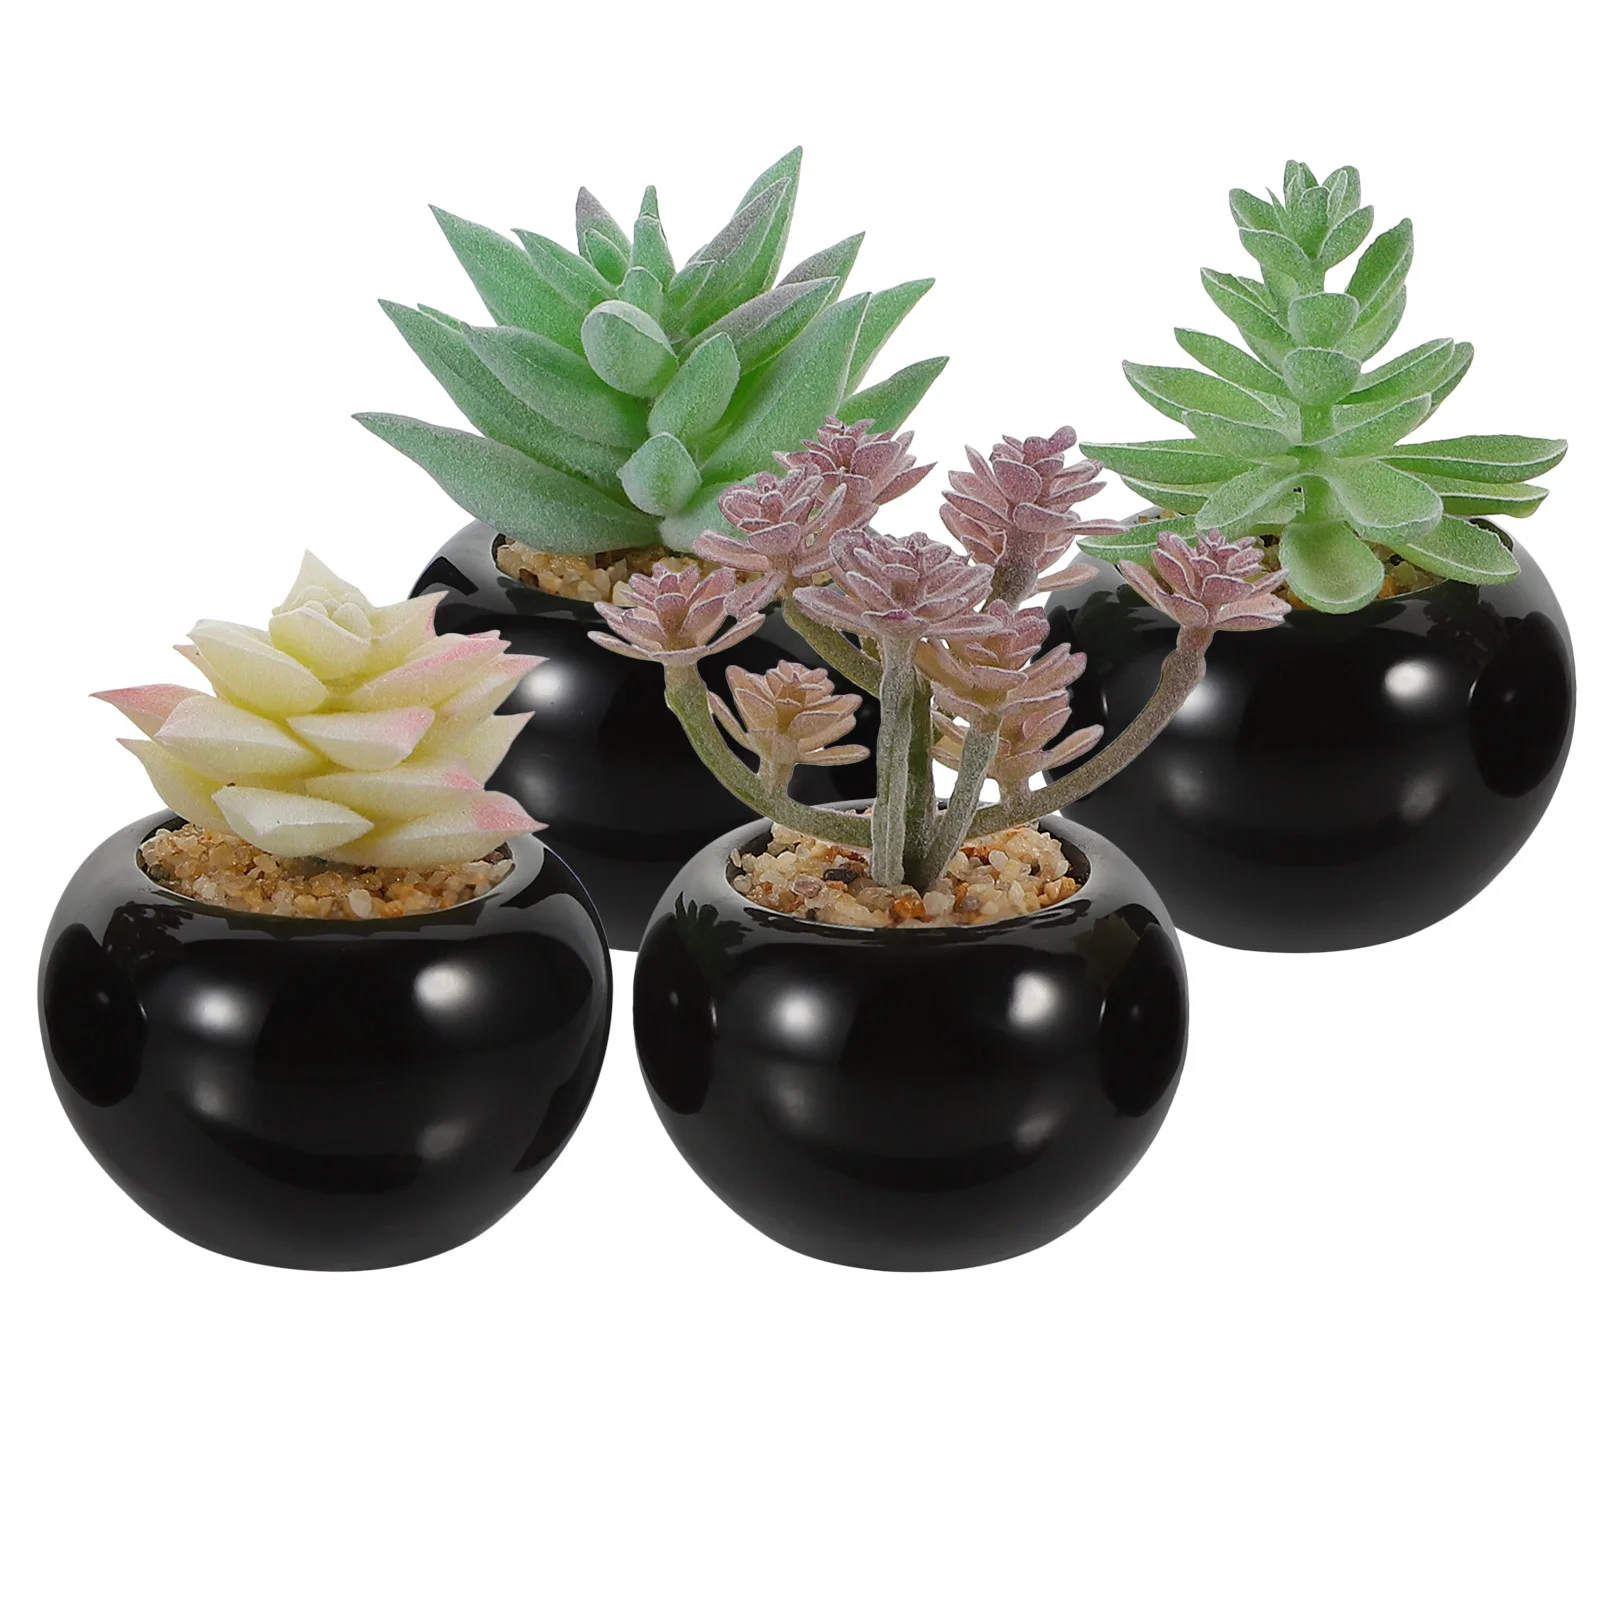 

4 Pcs Mini Ornaments Simulated Bonsai Artificial Plants Potted Fake Desk Miniature Landscape Decor Small Pots Faux Succulents